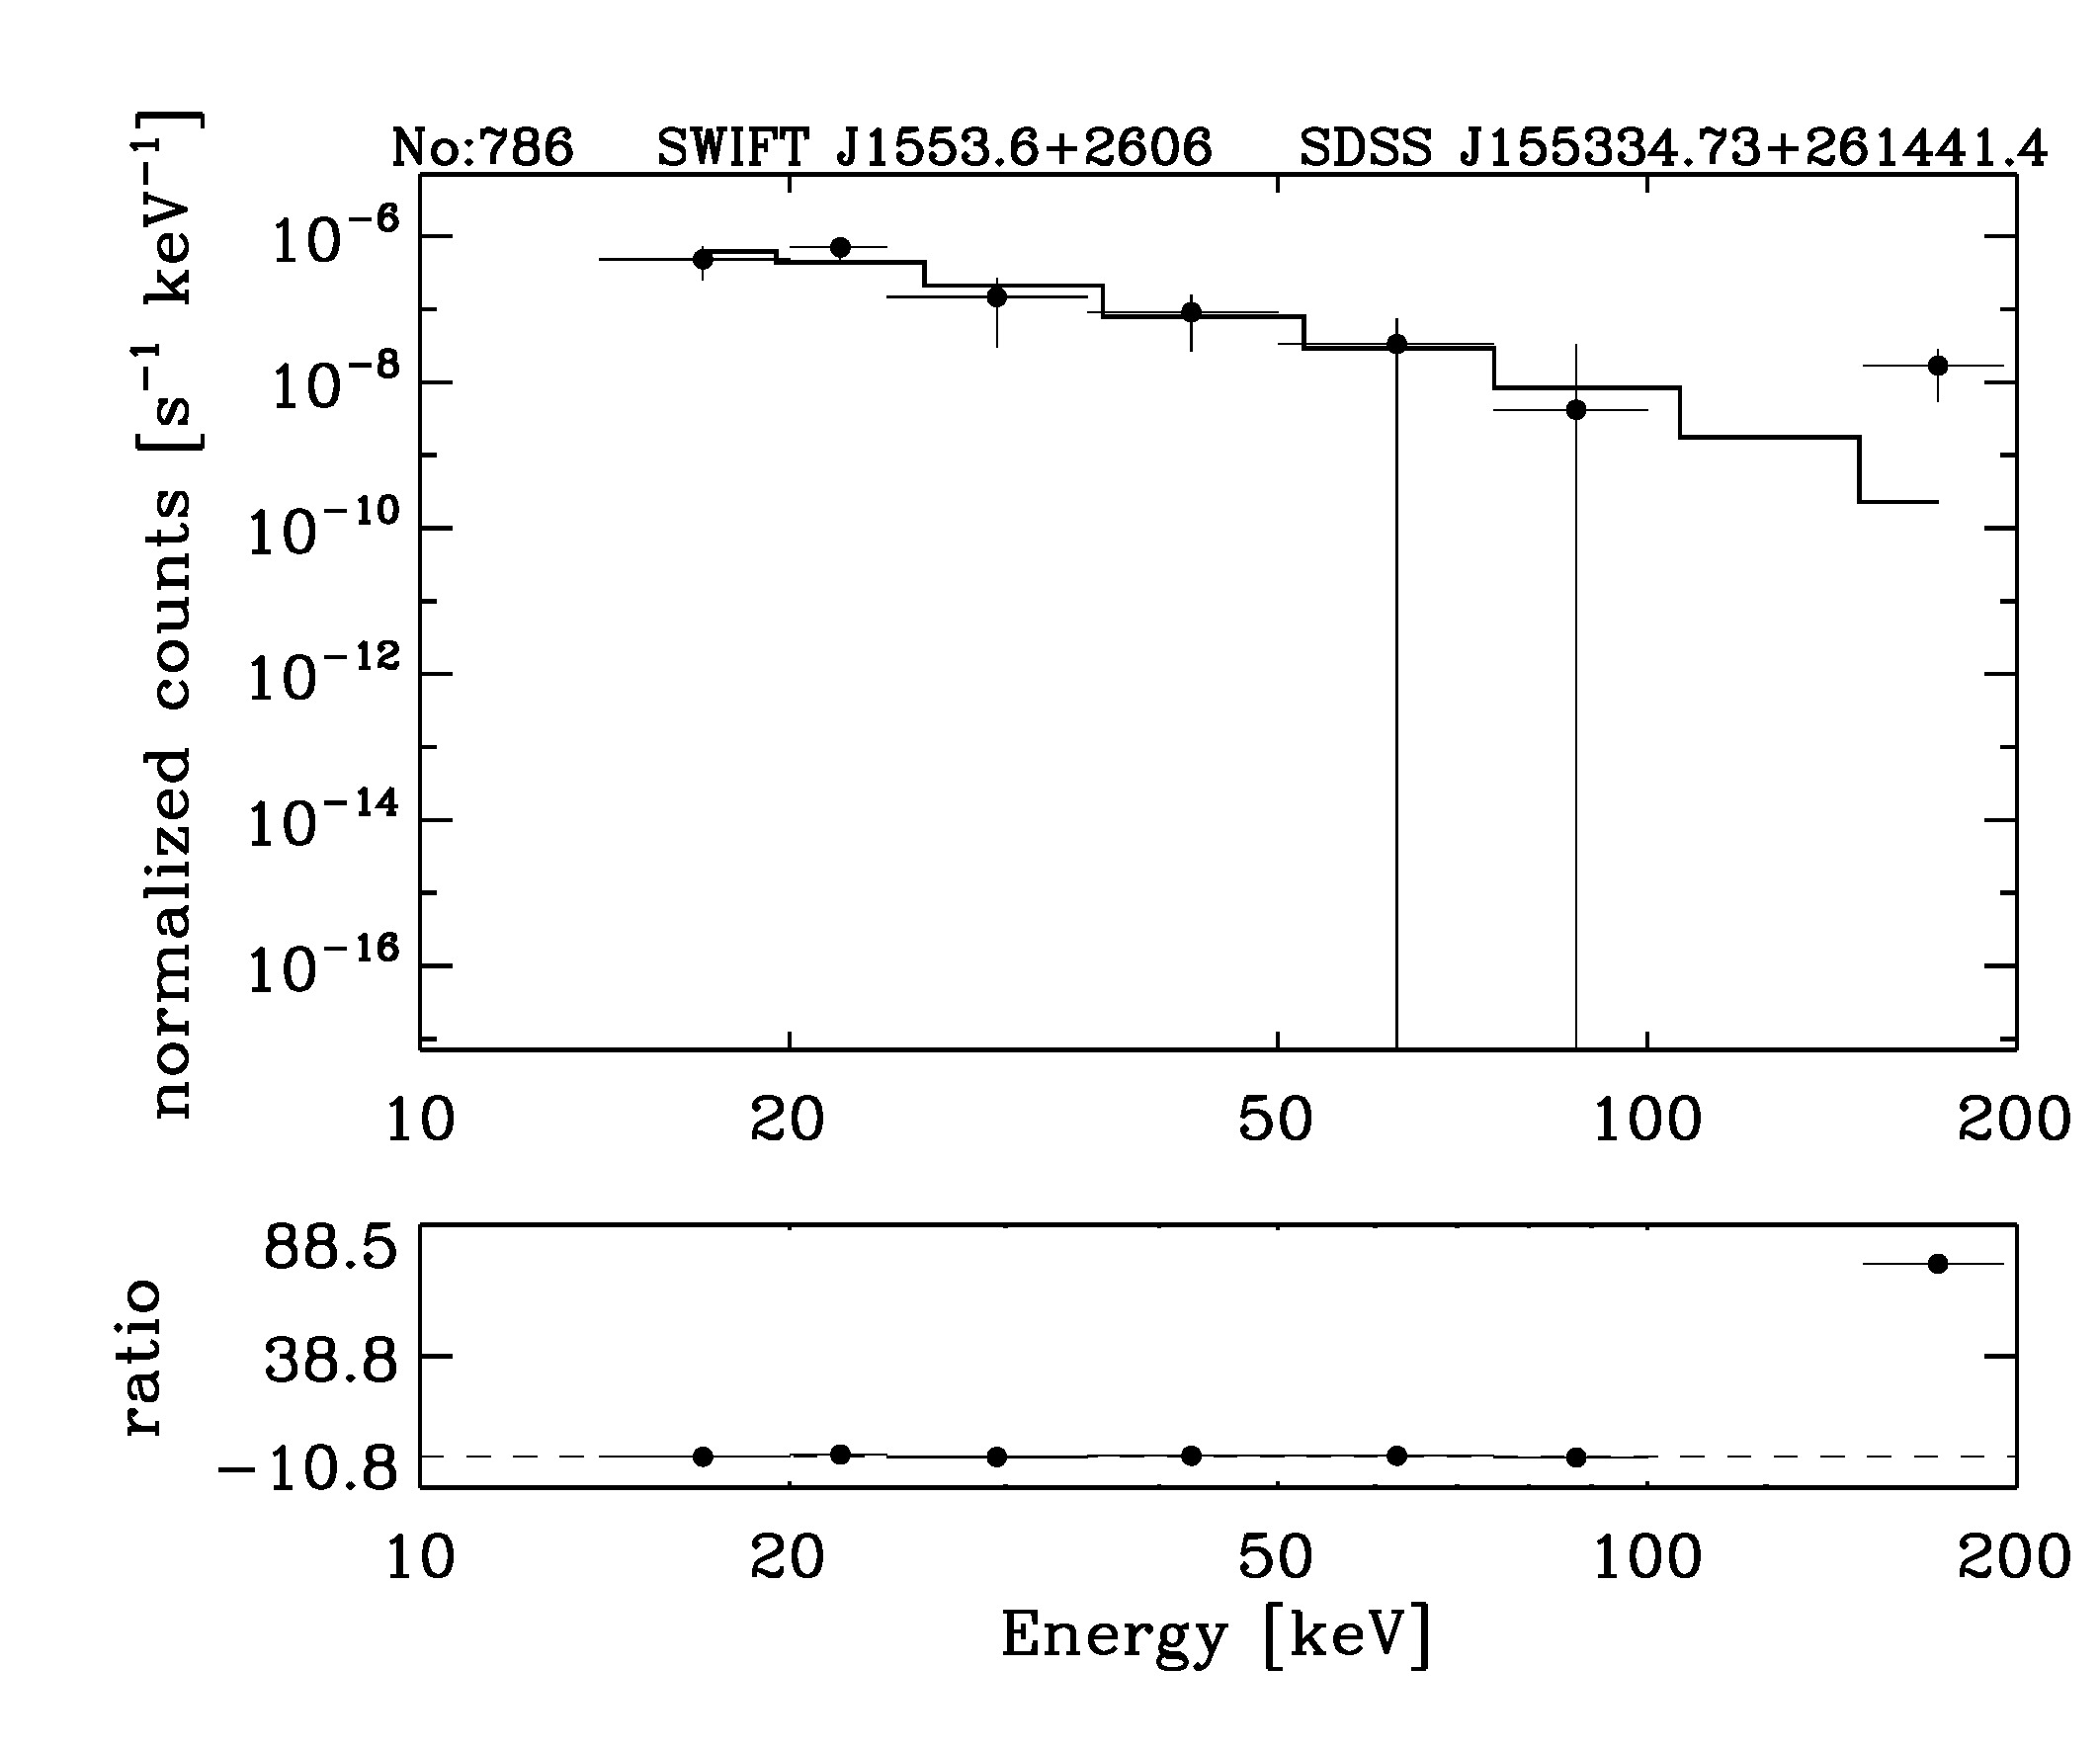 BAT Spectrum for SWIFT J1553.6+2606